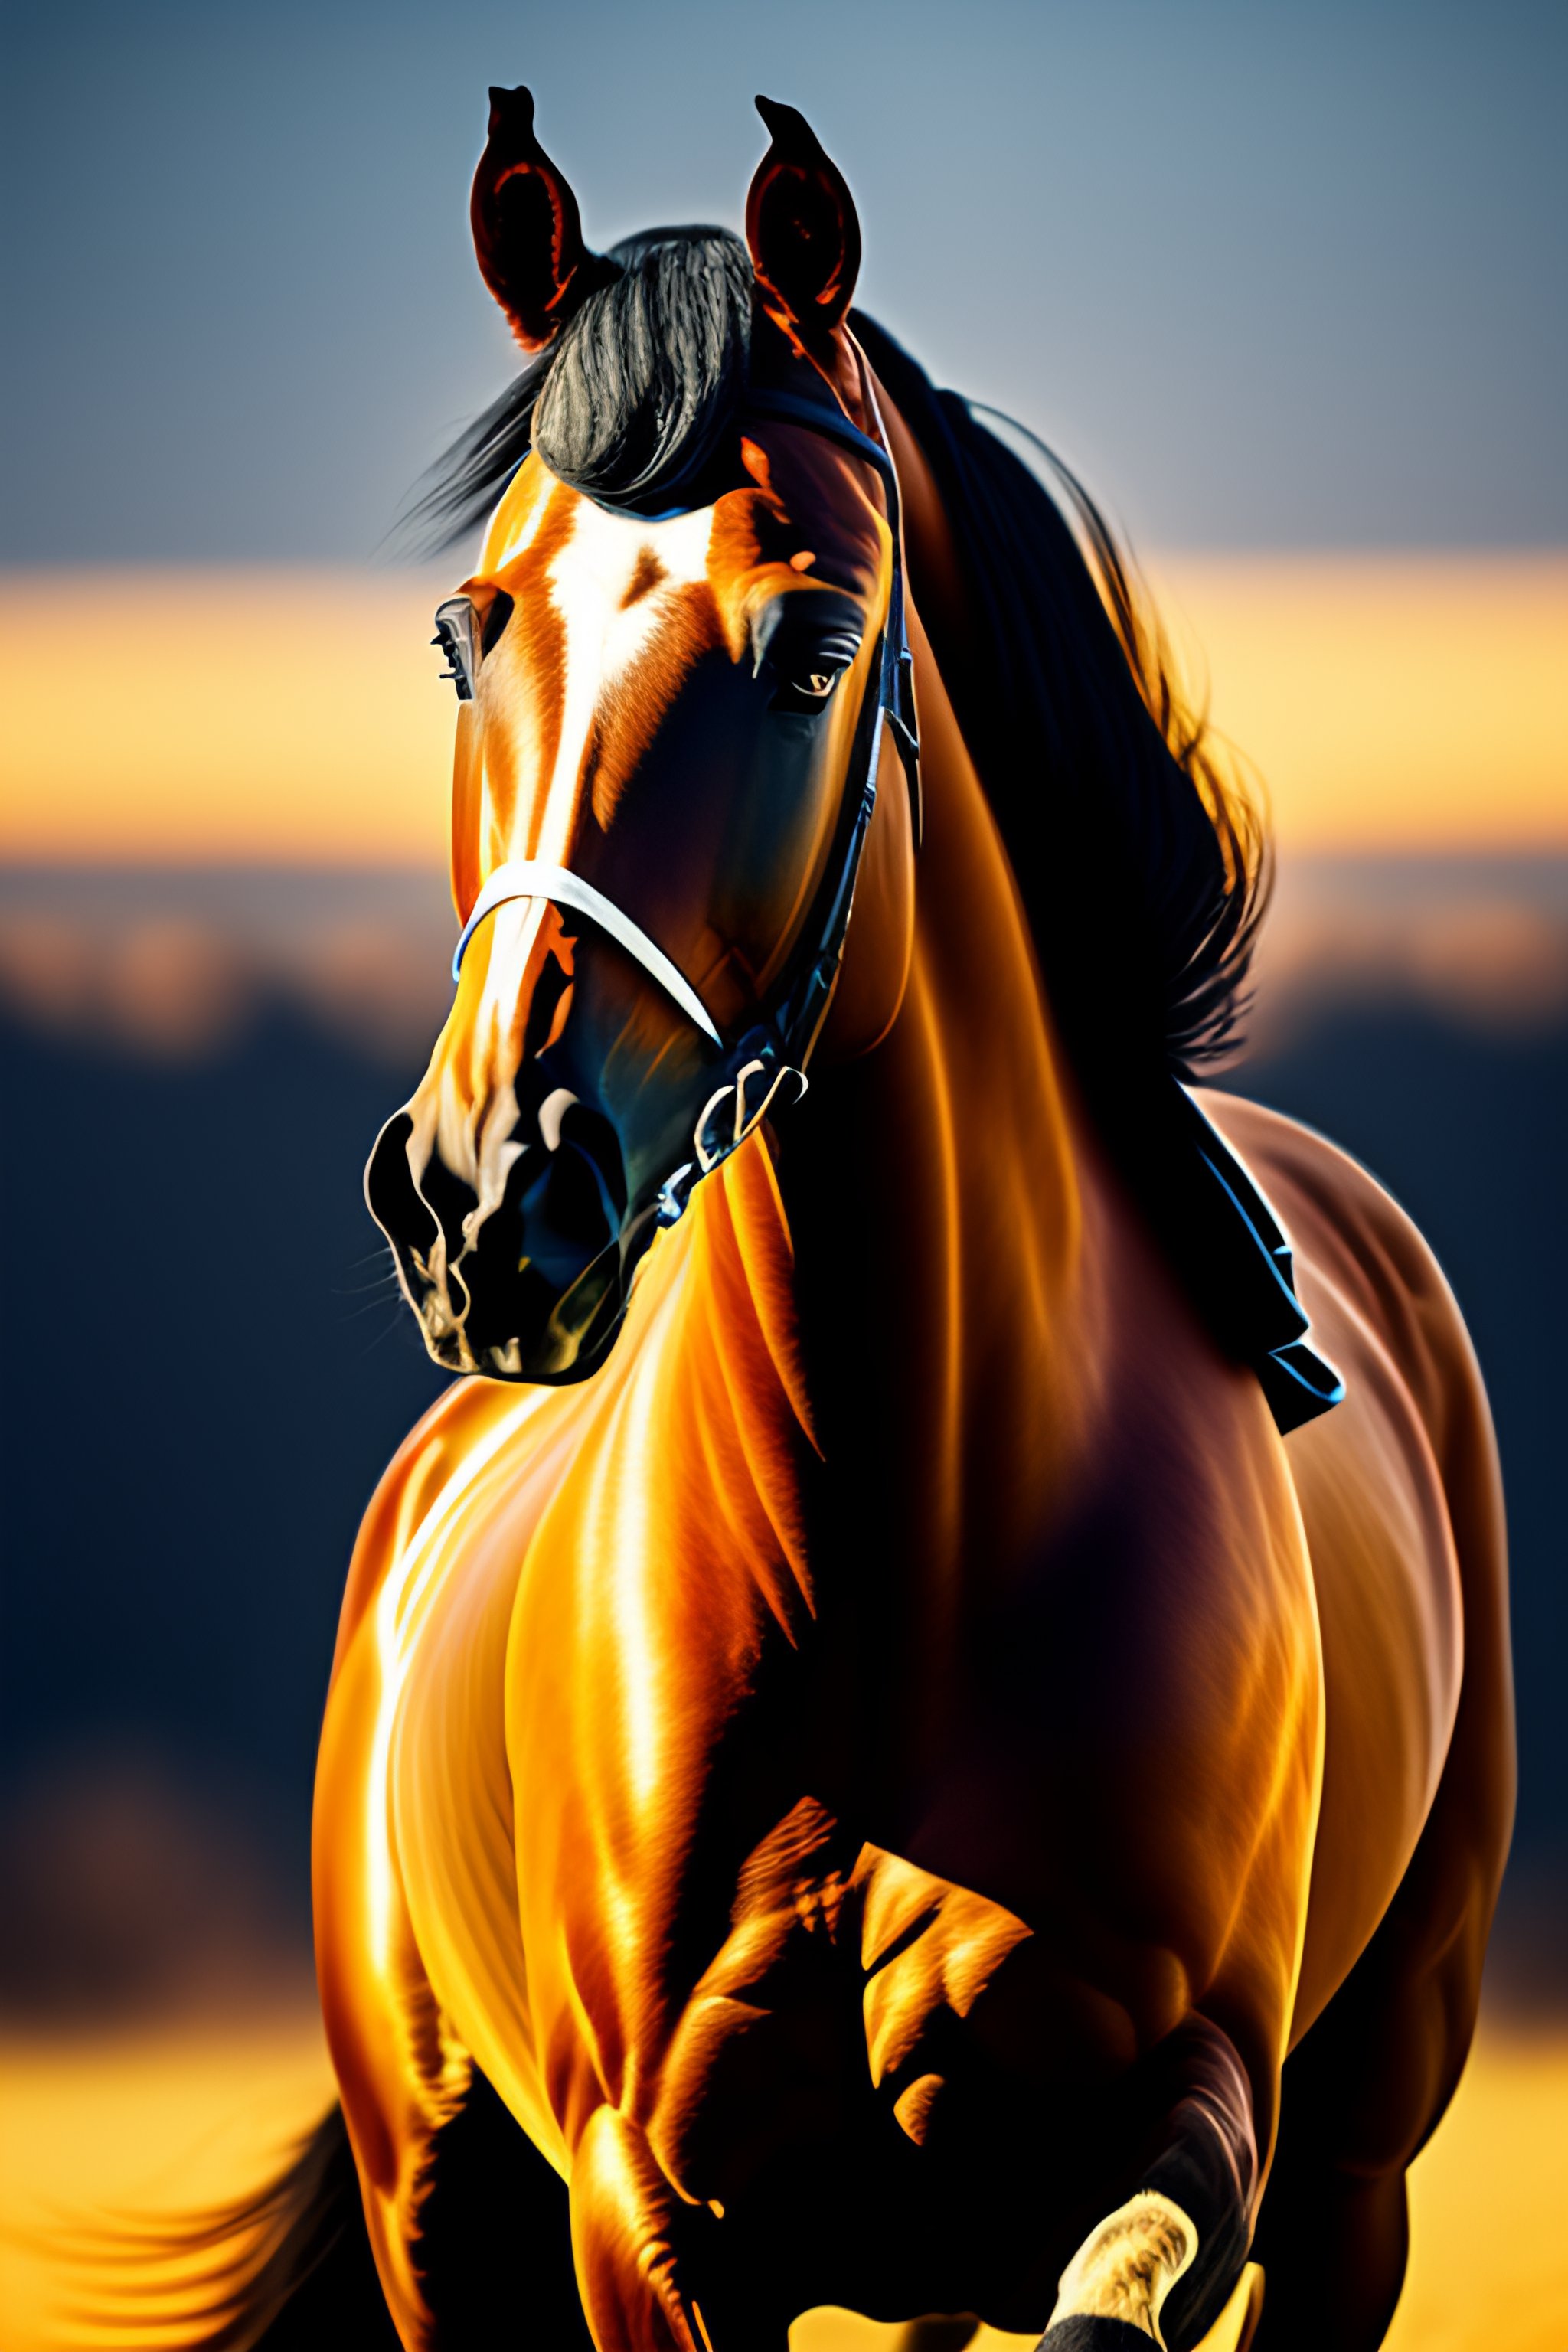 Cavalo Frente Imagens – Download Grátis no Freepik